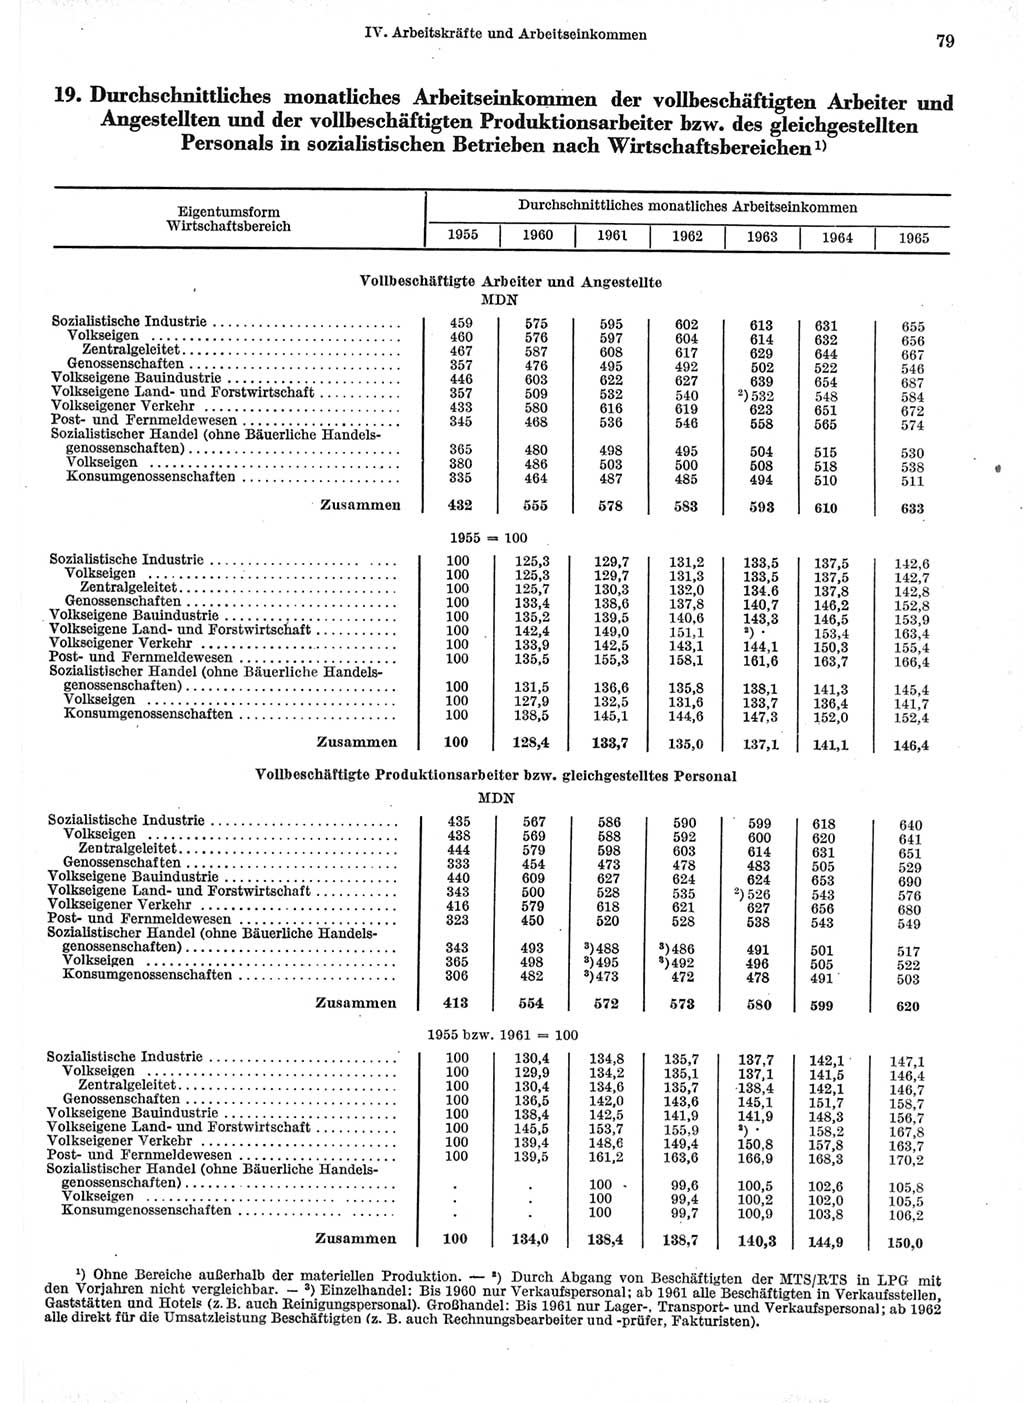 Statistisches Jahrbuch der Deutschen Demokratischen Republik (DDR) 1966, Seite 79 (Stat. Jb. DDR 1966, S. 79)